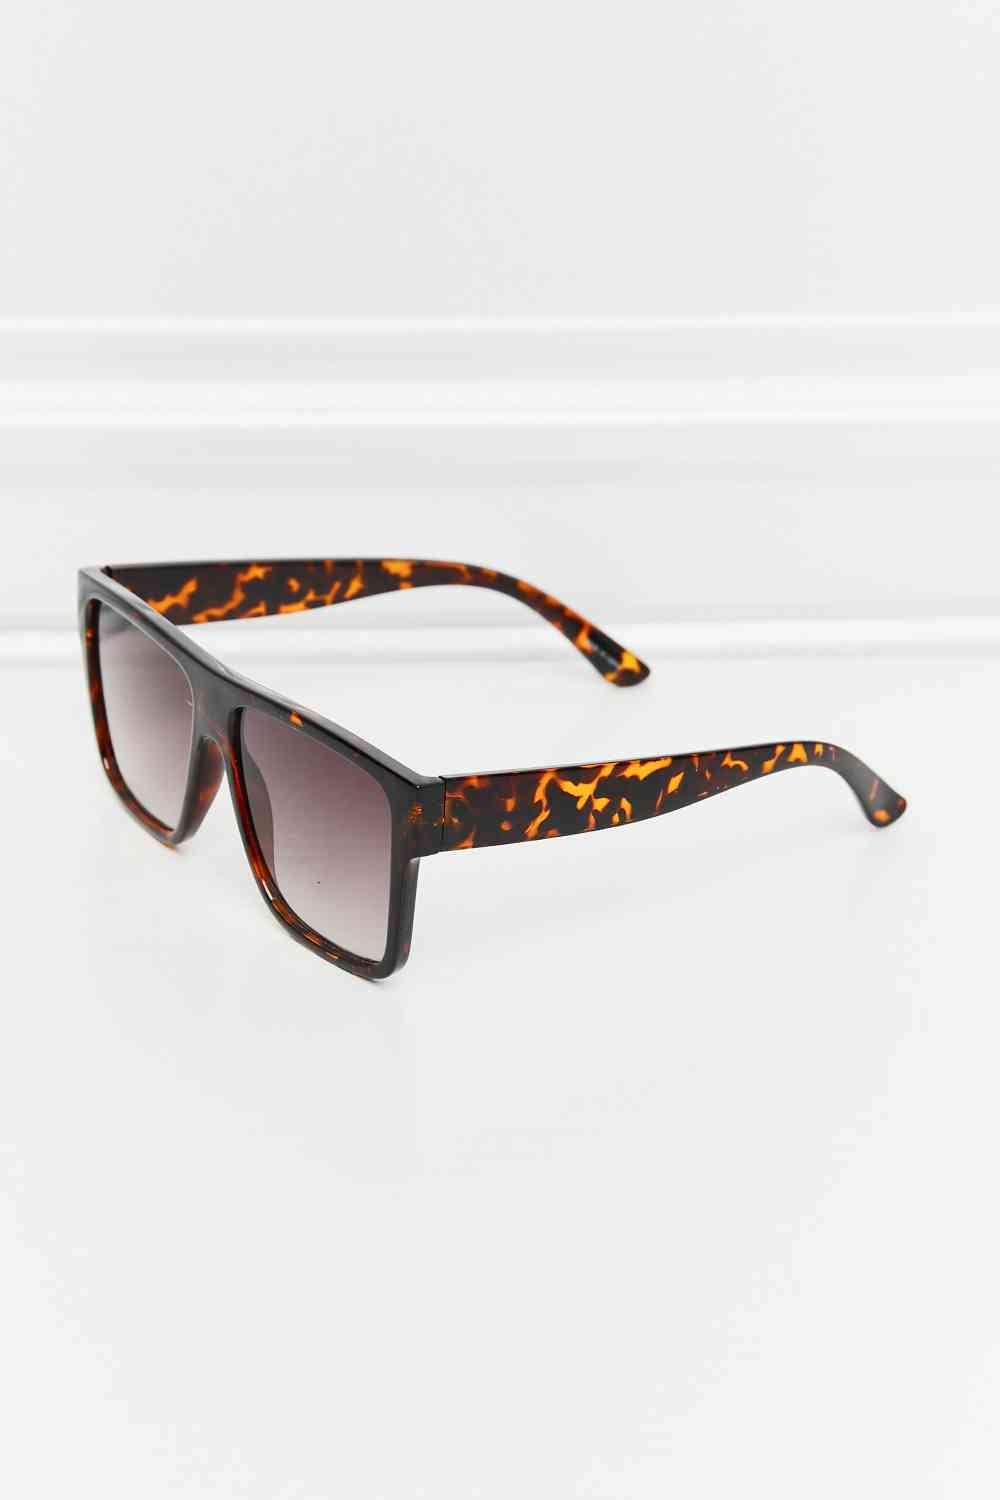 TEEK - Tangerine Tortoiseshell Square Sunglasses EYEGLASSES TEEK Trend   